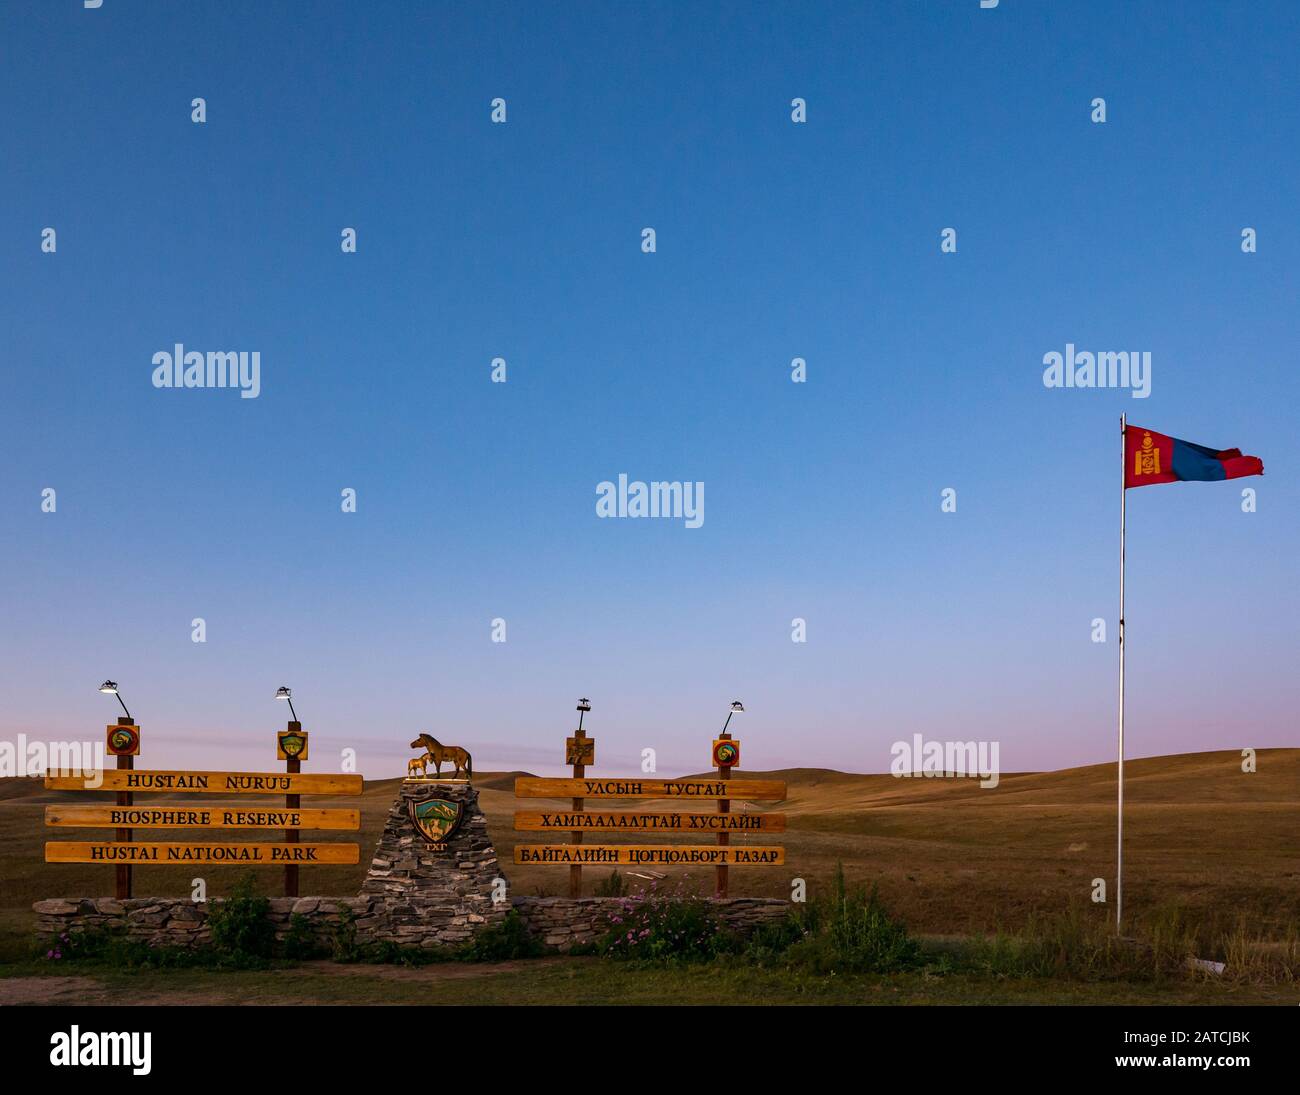 Eintritt in das Naturschutzgebiet Hustai oder Khustain Nuruu National Park bei Sonnenaufgang mit mongolischer Flagge, Provinz Tov, Mongolia, Asien Stockfoto